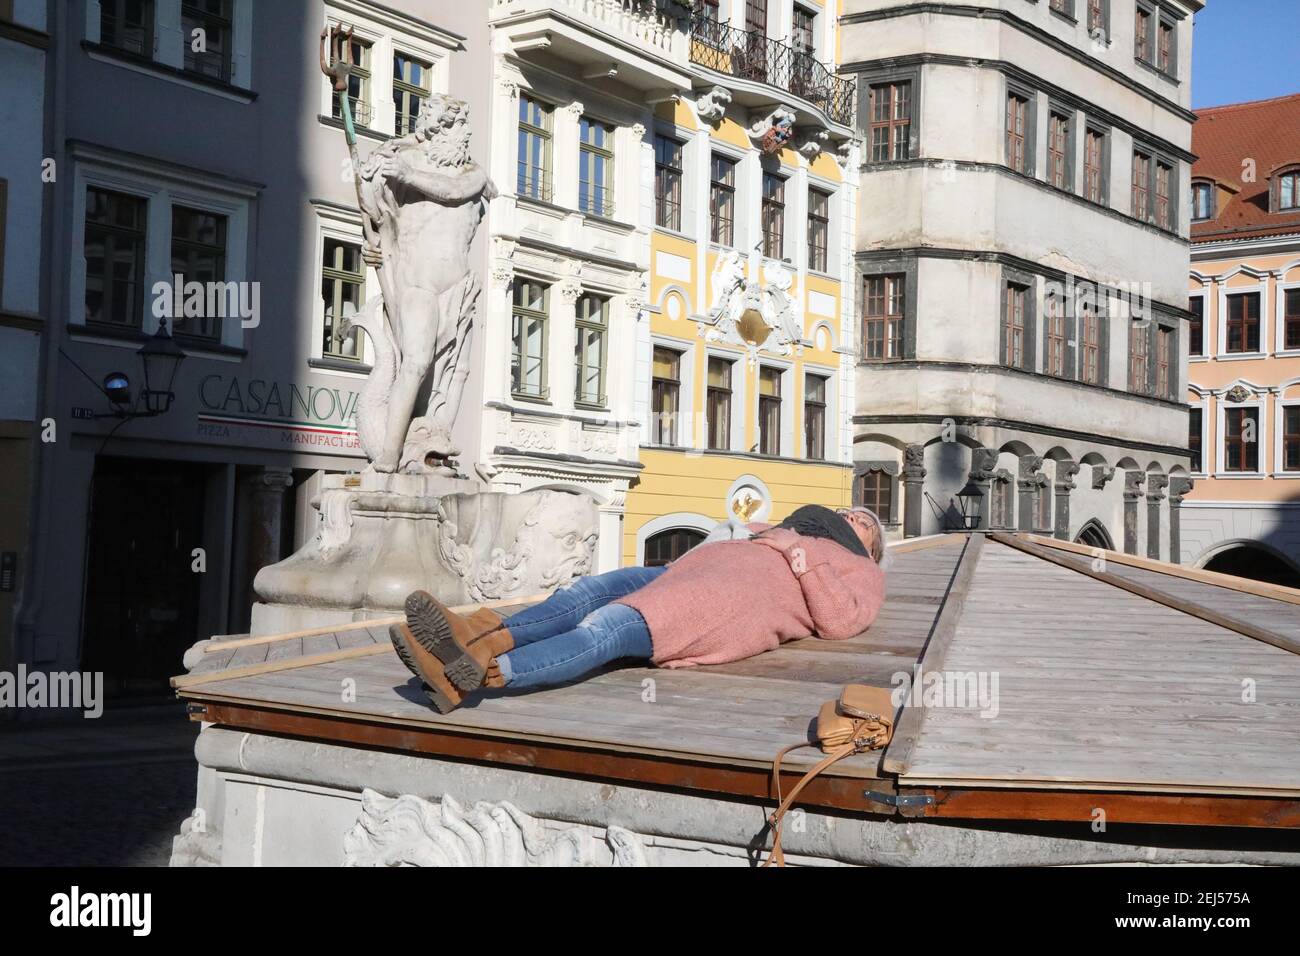 mangels Sitzgelegenheiten am Untermarkt , wusste diese sonnenhungrige Spaziergängerin sich zu helfen. Görlitz, 21.02.2021 Stock Photo